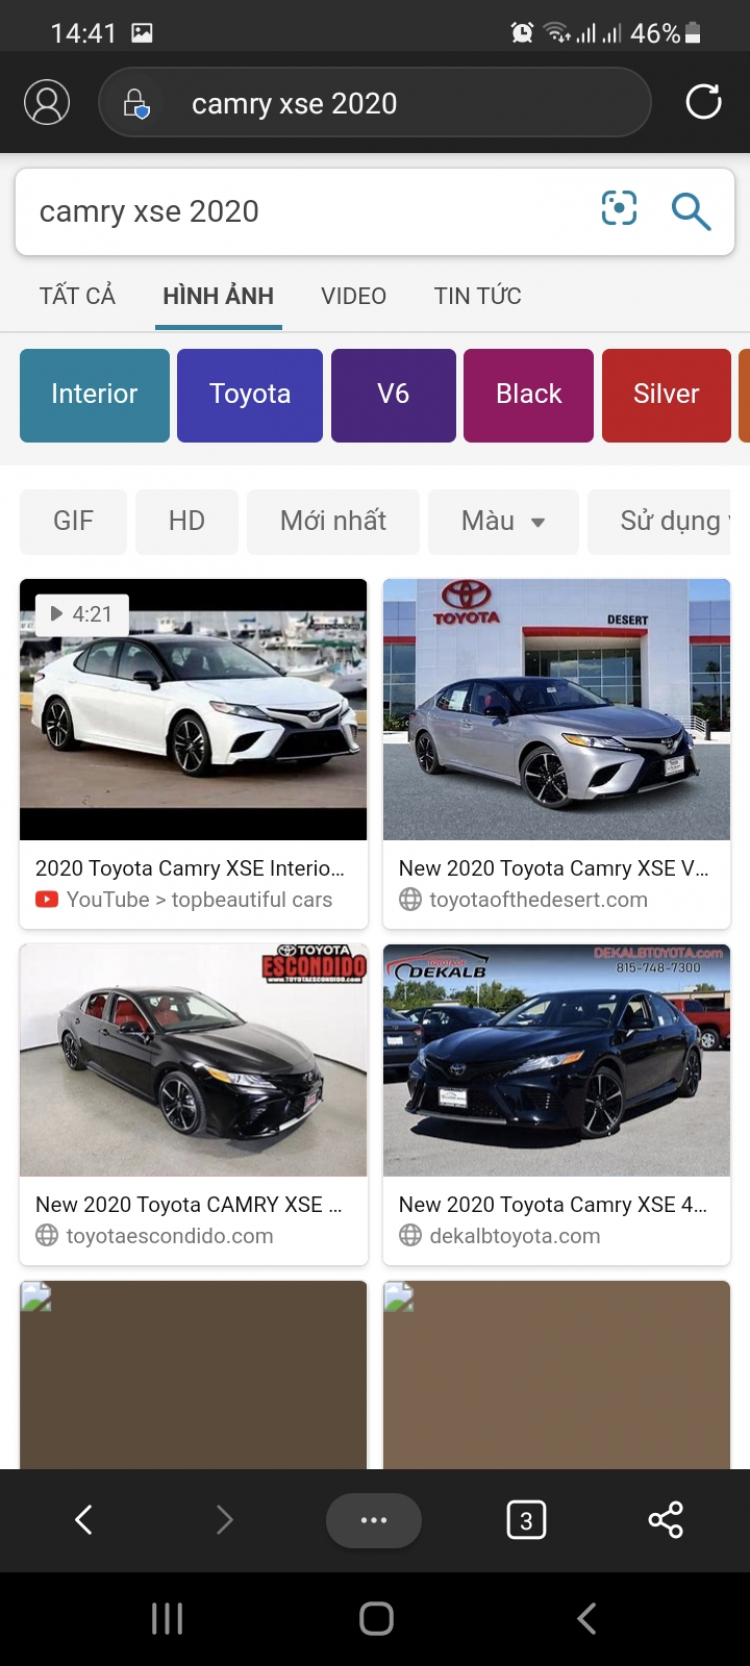 Toyota Camry 2021 mở bán tại Nhật Bản: giá từ 764 triệu đồng, chờ ngày về Việt Nam